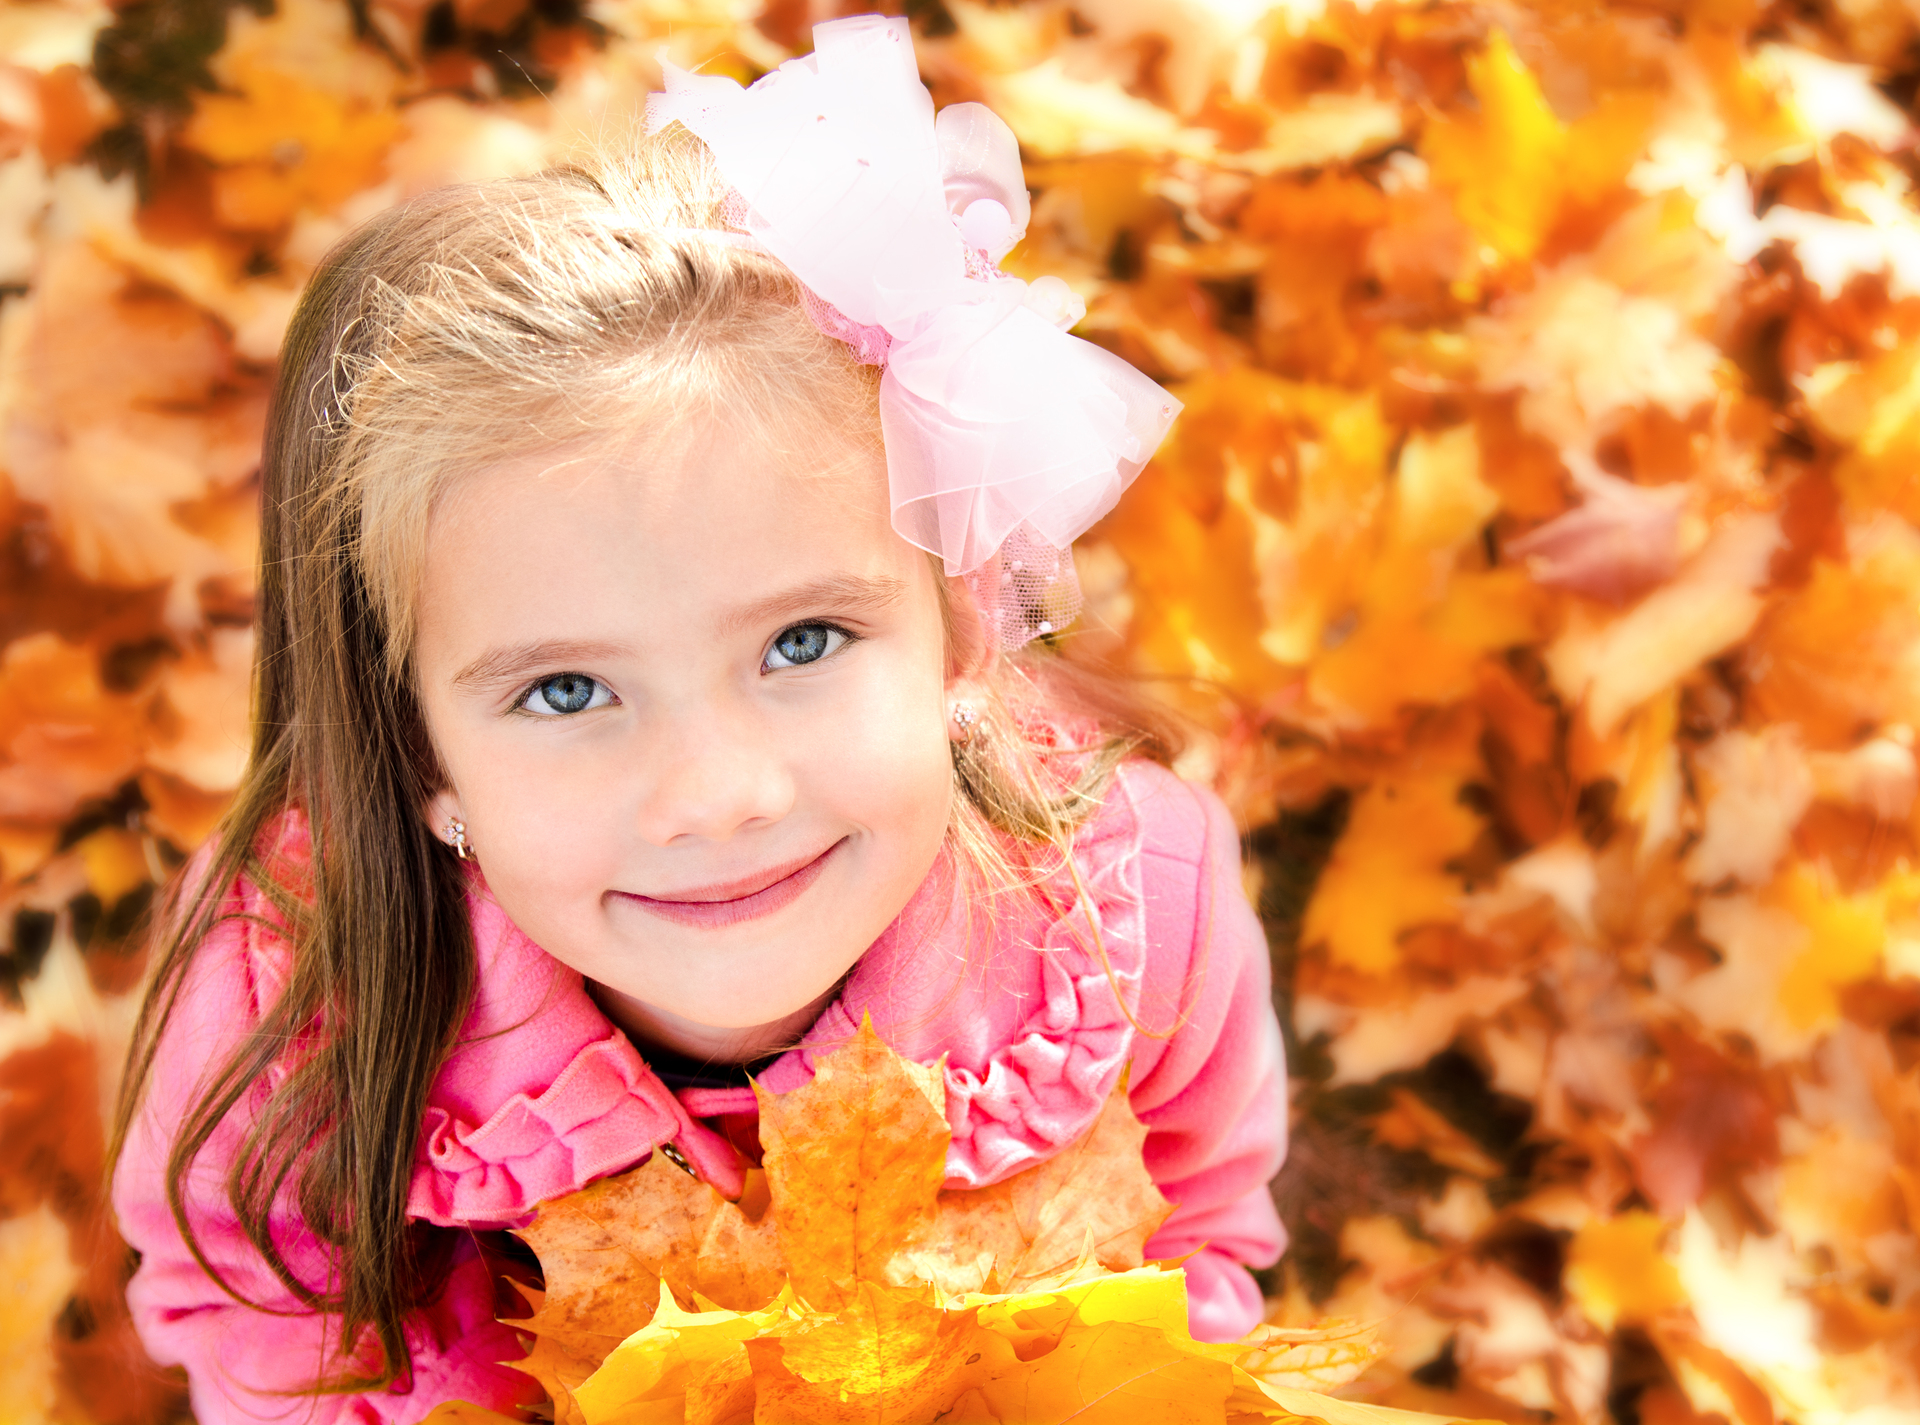 Na zdjęciu widoczna jest urocza dziewczynka, która stoi wśród kolorowych jesiennych liści. Dziewczynka ma uśmiechniętą twarz, na której widać radość i entuzjazm z powodu piękna jesiennej natury. Ma na sobie ciepły sweter i kolorowe rajstopy, które podkreślają jej piękno i dodają uroku. W tle widać drzewa porośnięte złotymi liśćmi, które wprowadzają nas w jesienny nastrój. Dziewczynka ma śliczne i oryginalne imię, które dodaje uroku całemu obrazkowi. Obrazek kojarzy się z pięknem jesieni, radością oraz uroczymi imionami dla dziewczynek, co może przyciągnąć uwagę osób zainteresowanych naturą, jesiennymi krajobrazami oraz wyjątkowymi imionami dla dzieci.